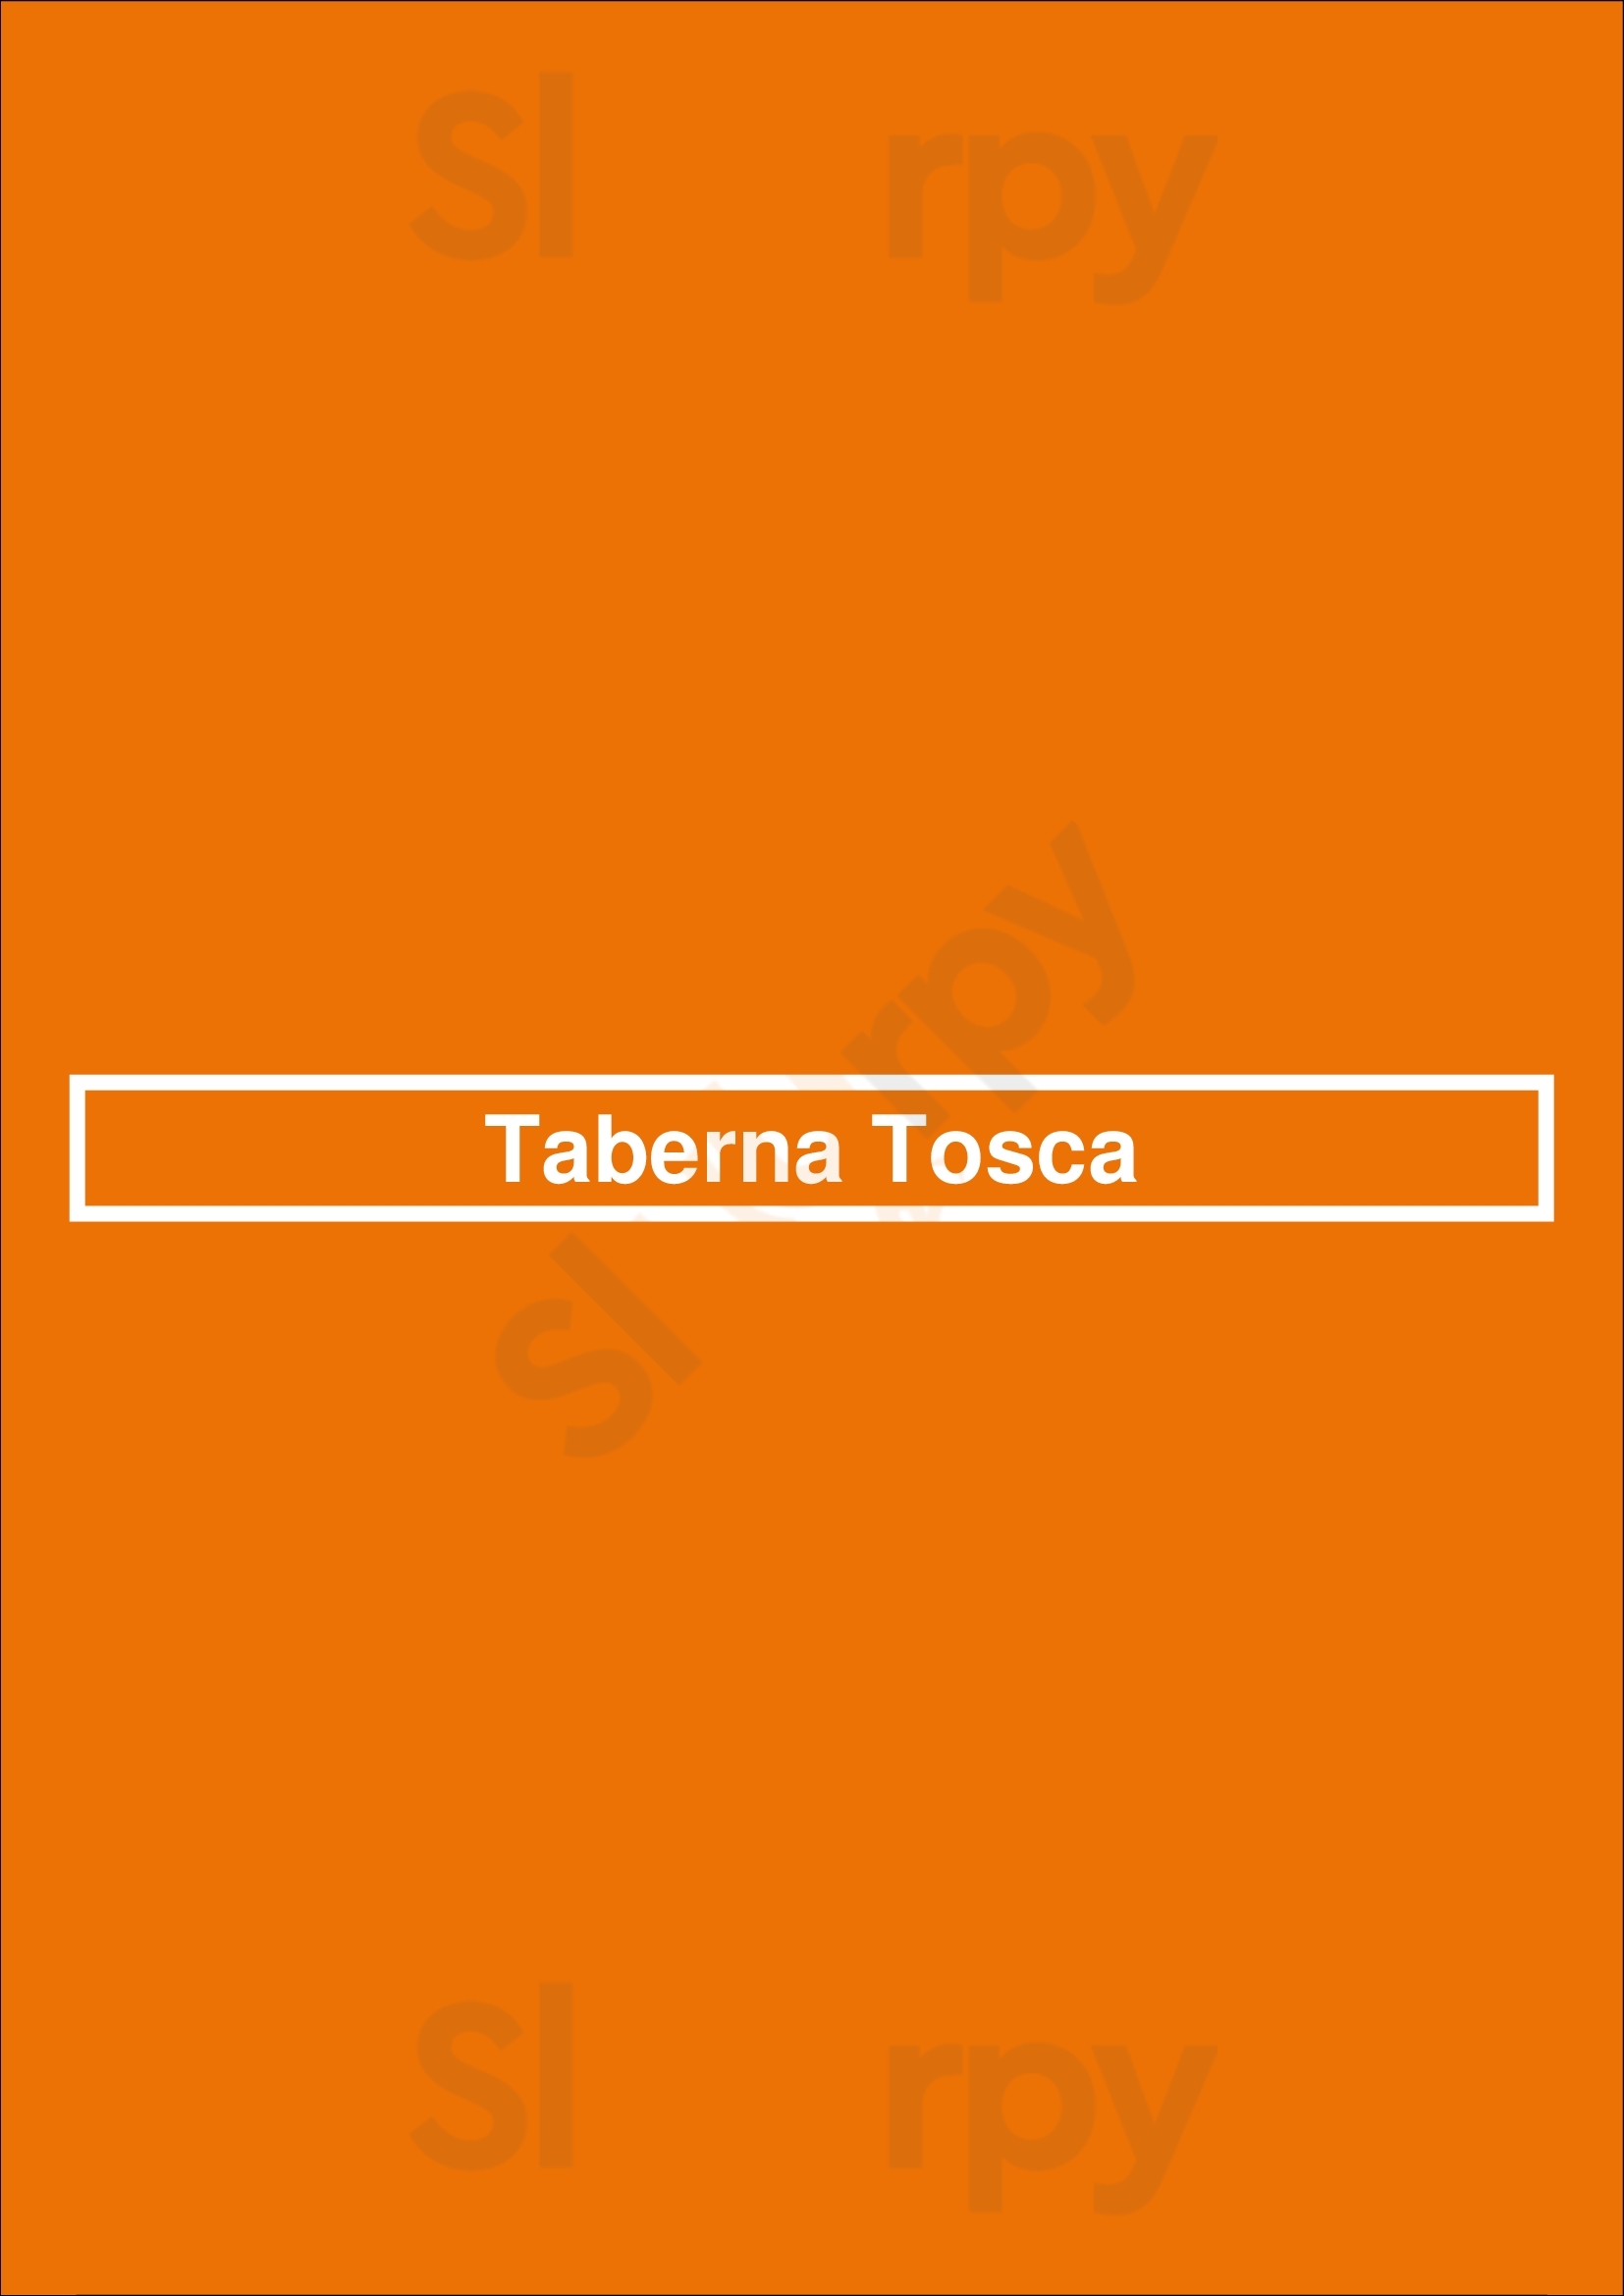 Taberna Tosca Lisboa Menu - 1